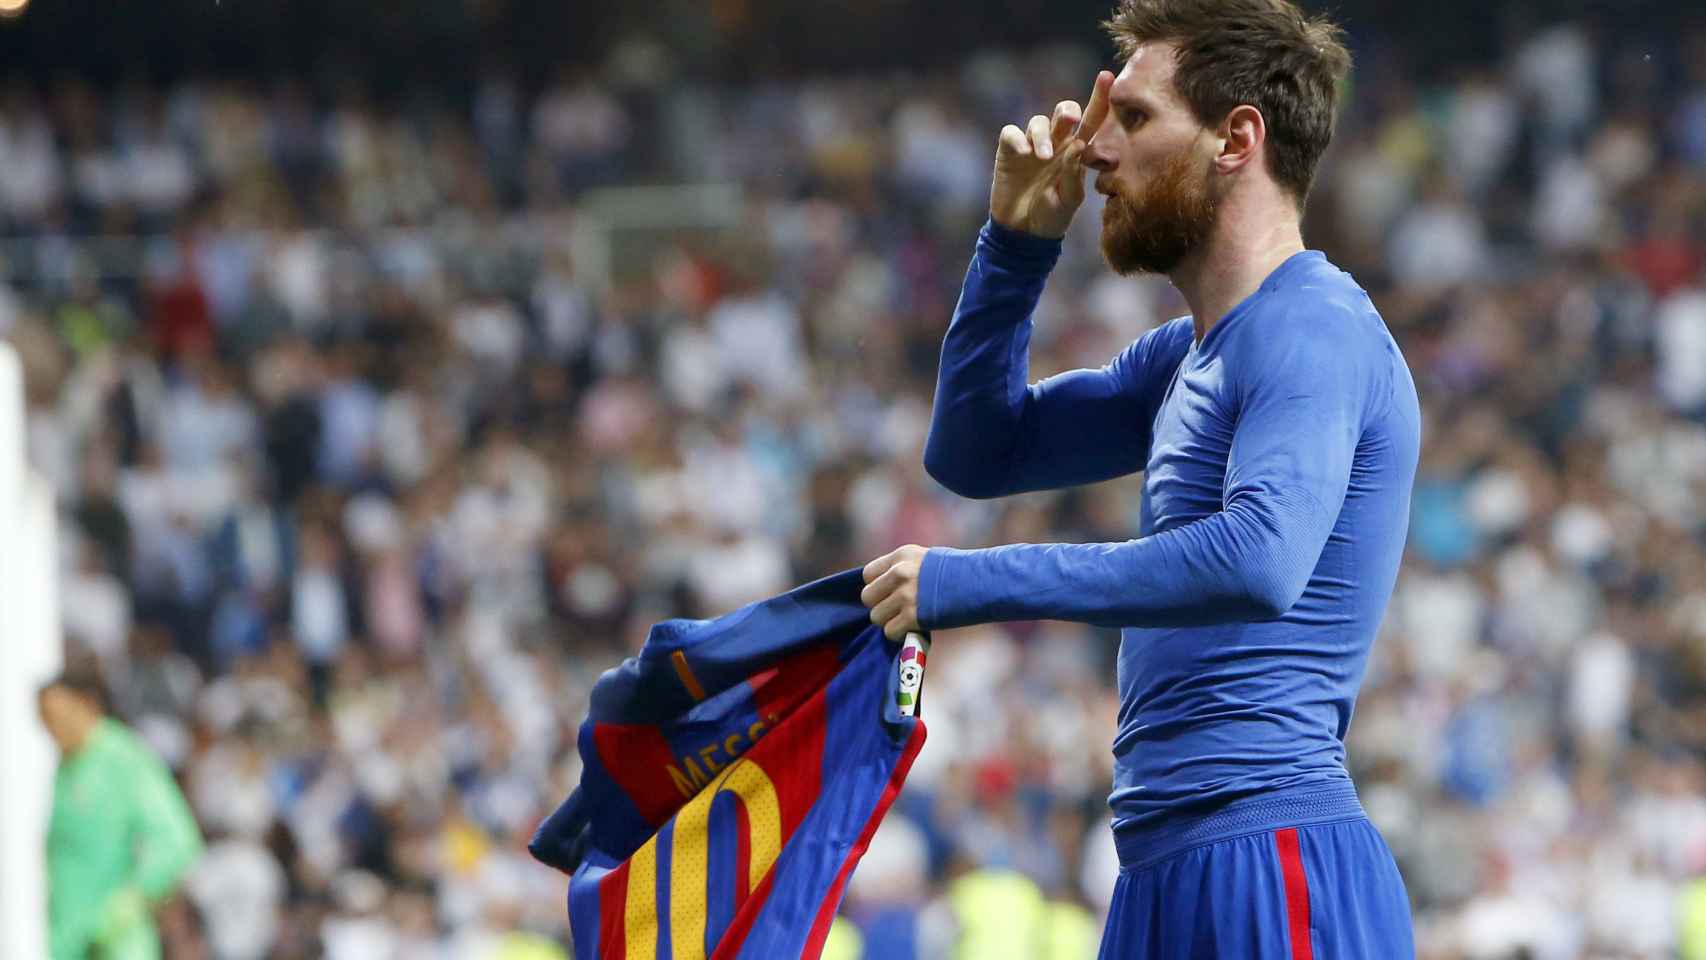 El momento en que Messi sostiene su camiseta solo con una mano